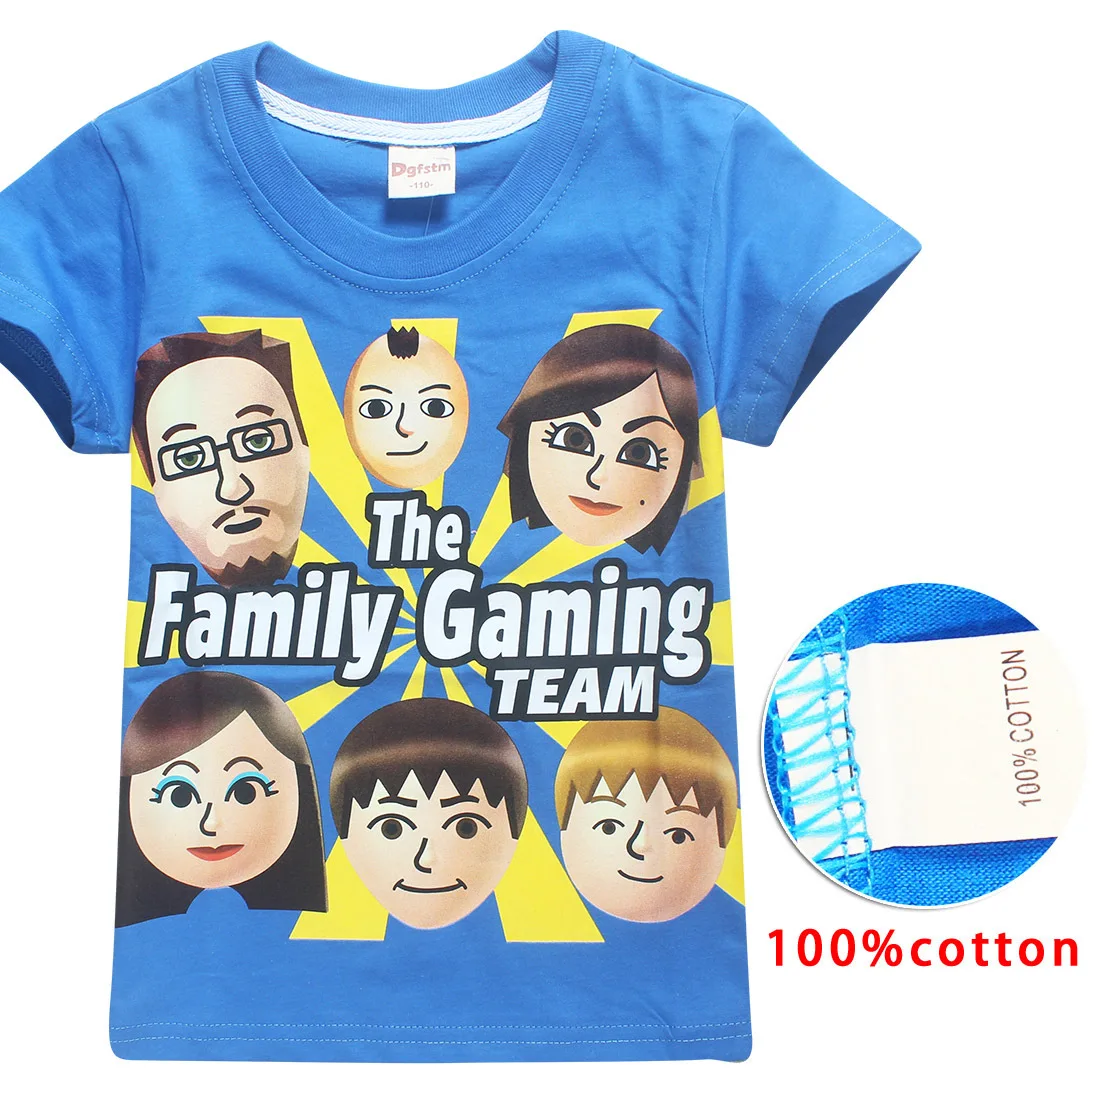 Fgteev/новые Семейные футболки игровые футболки для девочек футболки с короткими рукавами для больших мальчиков детские хлопковые Забавные топы